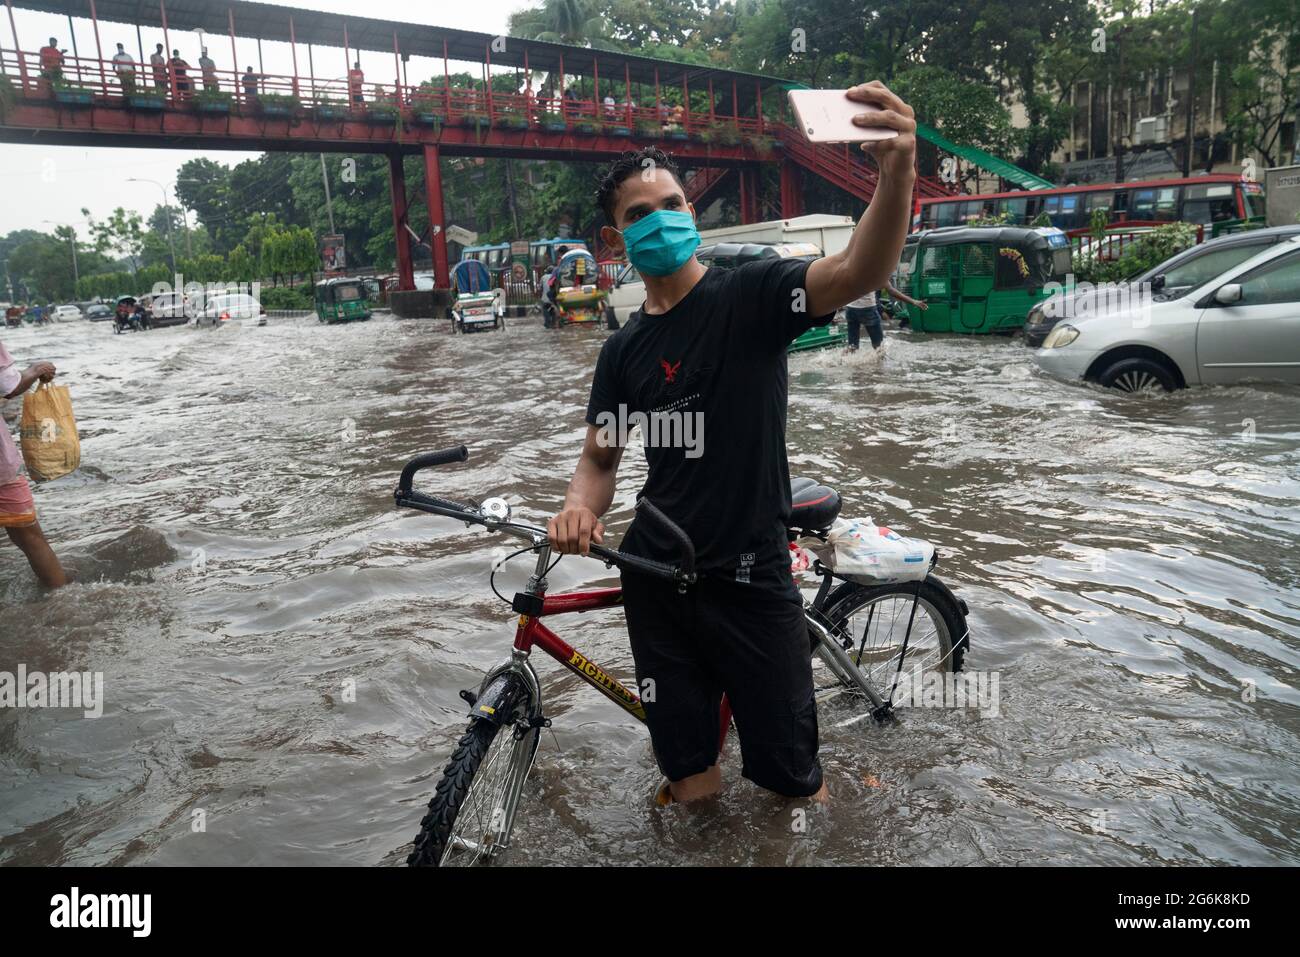 Ein Mann nimmt Selfies im Regenwasser auf den Straßen während des Monsunregens. Ein paar Stunden Regen verursachen Wasseranfälle auf den Straßen, da die Kanalisation und die Abflüsse nicht ordnungsgemäß gereinigt und gewartet werden. Dhaka, Bangladesch. Stockfoto